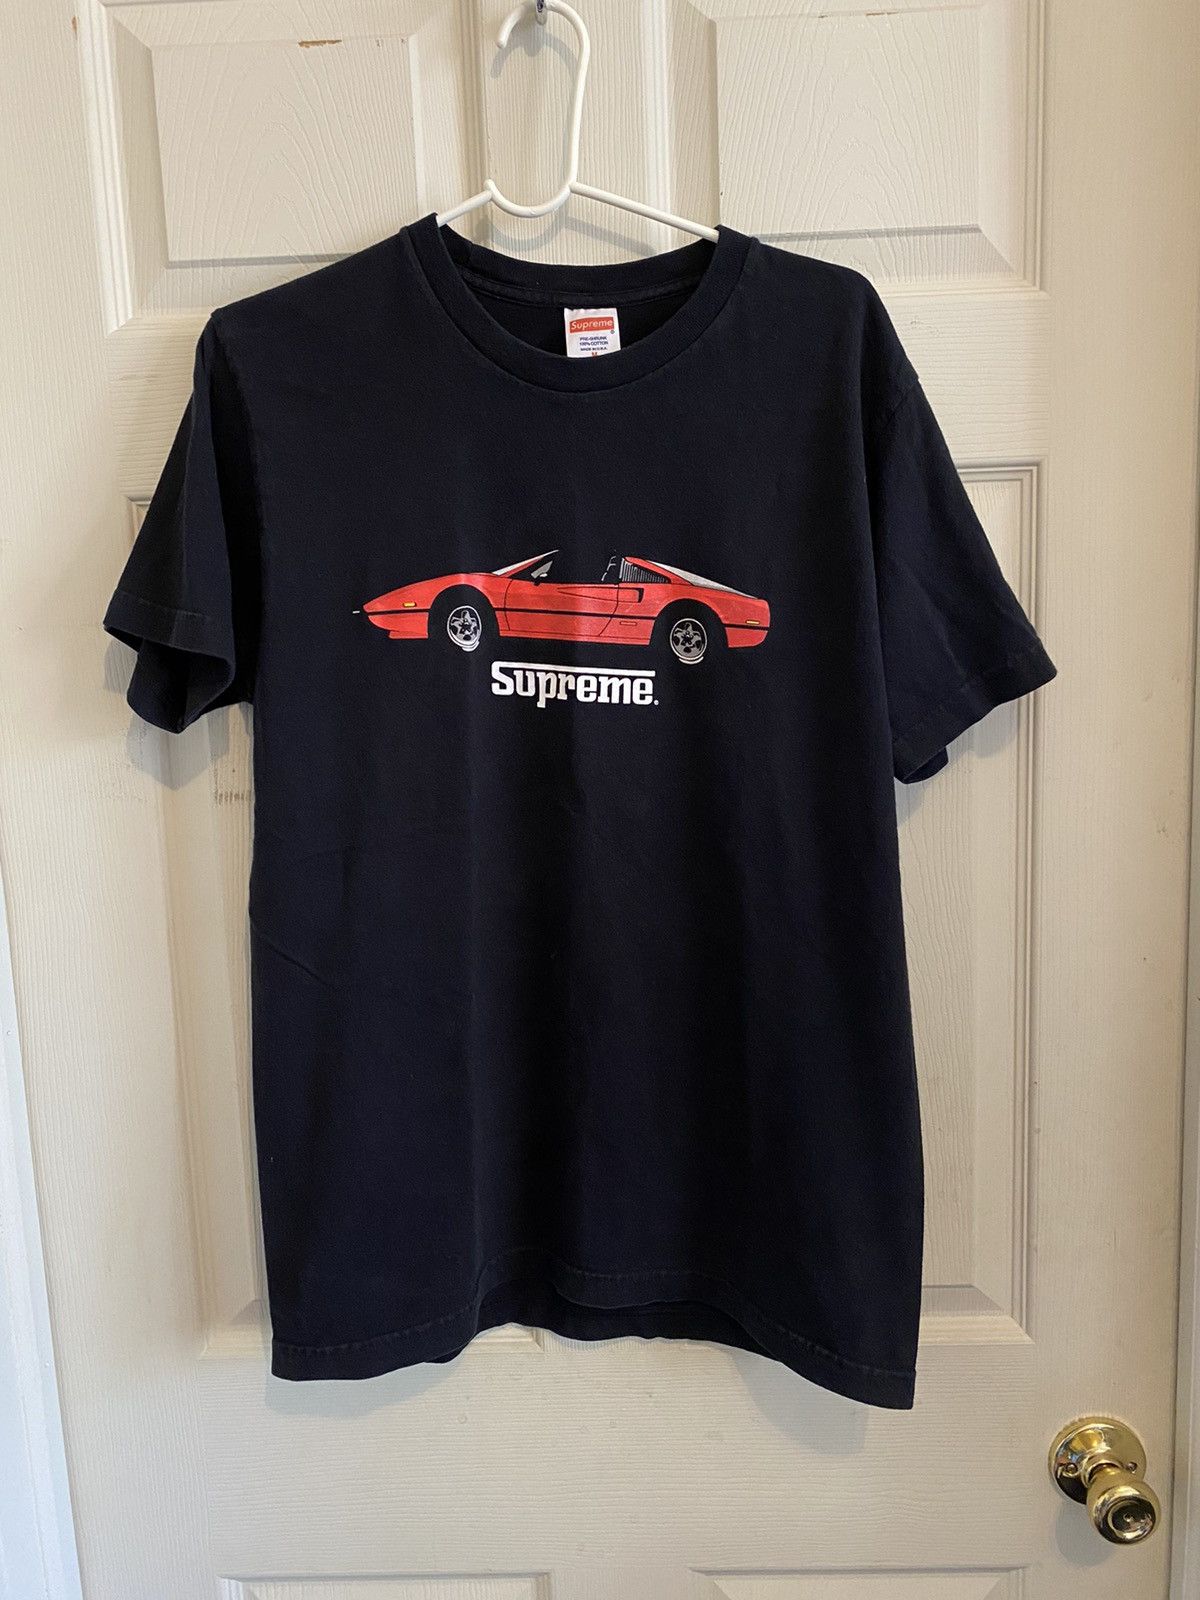 Supreme Supreme Ferrari T-Shirt | Grailed